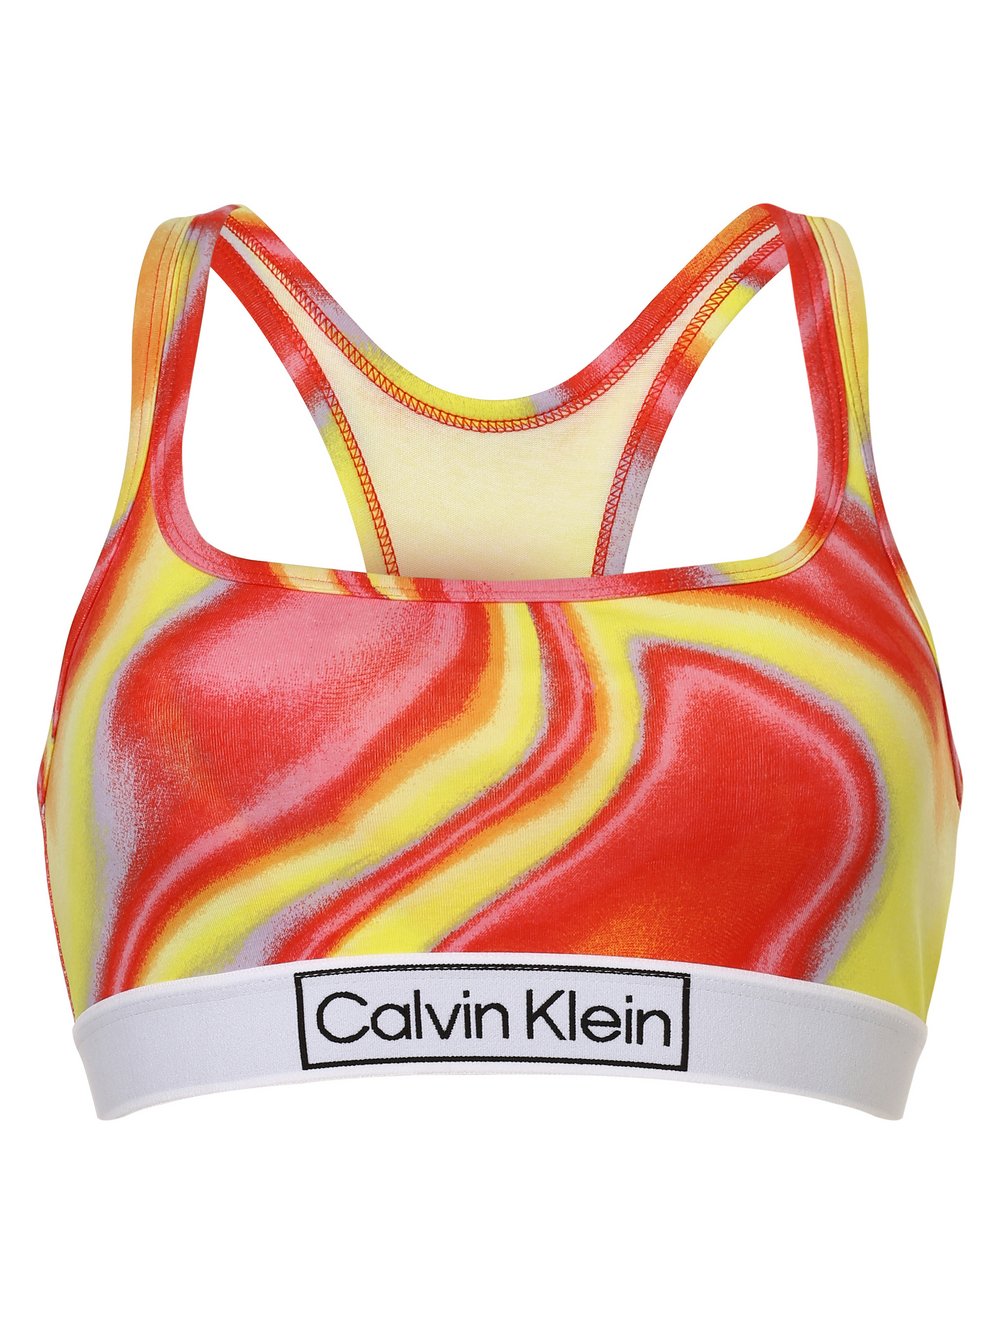 Calvin Klein - Gorset damski, żółty|czerwony|wielokolorowy